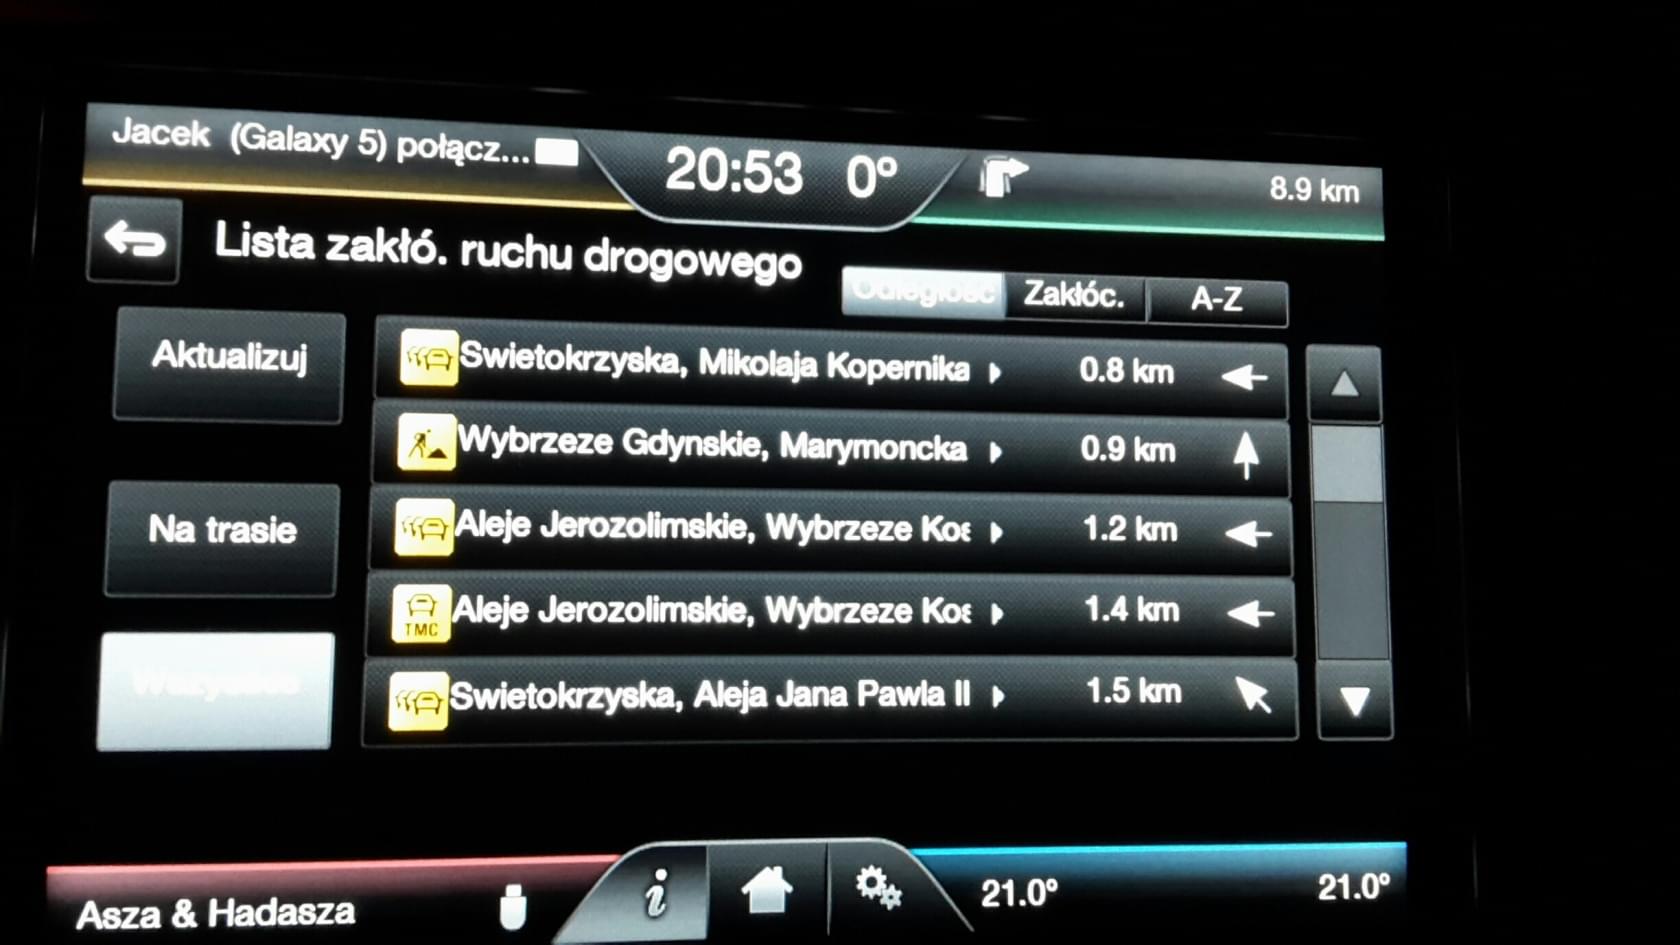 Mondeo 2014- ] Modyfikacje, Konfiguracje Co Można ? [Archiwum] - Strona 9 - Forum Ford Club Polska